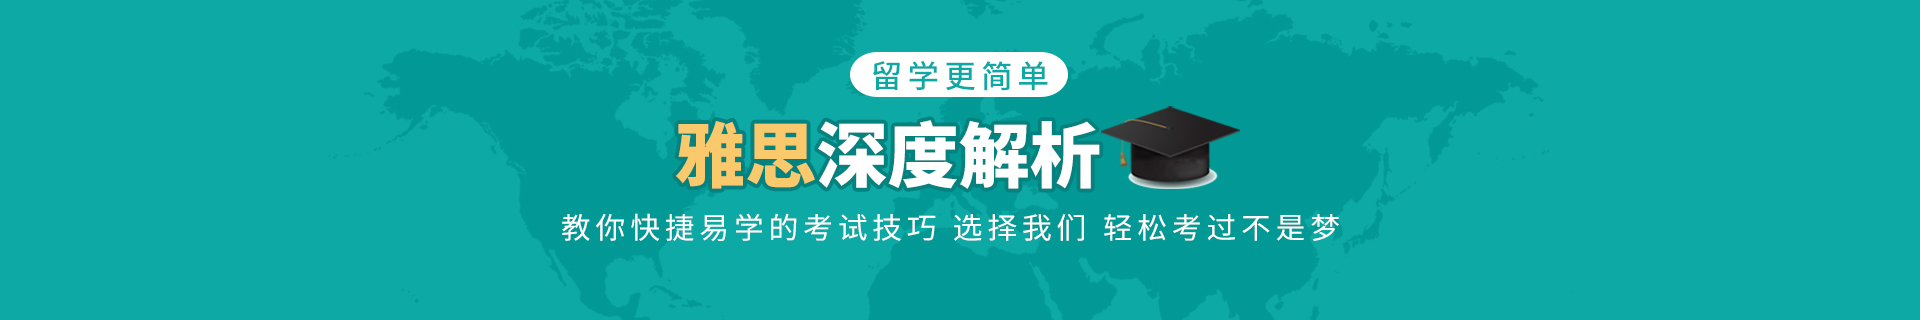 上海黄浦环球教育培训机构